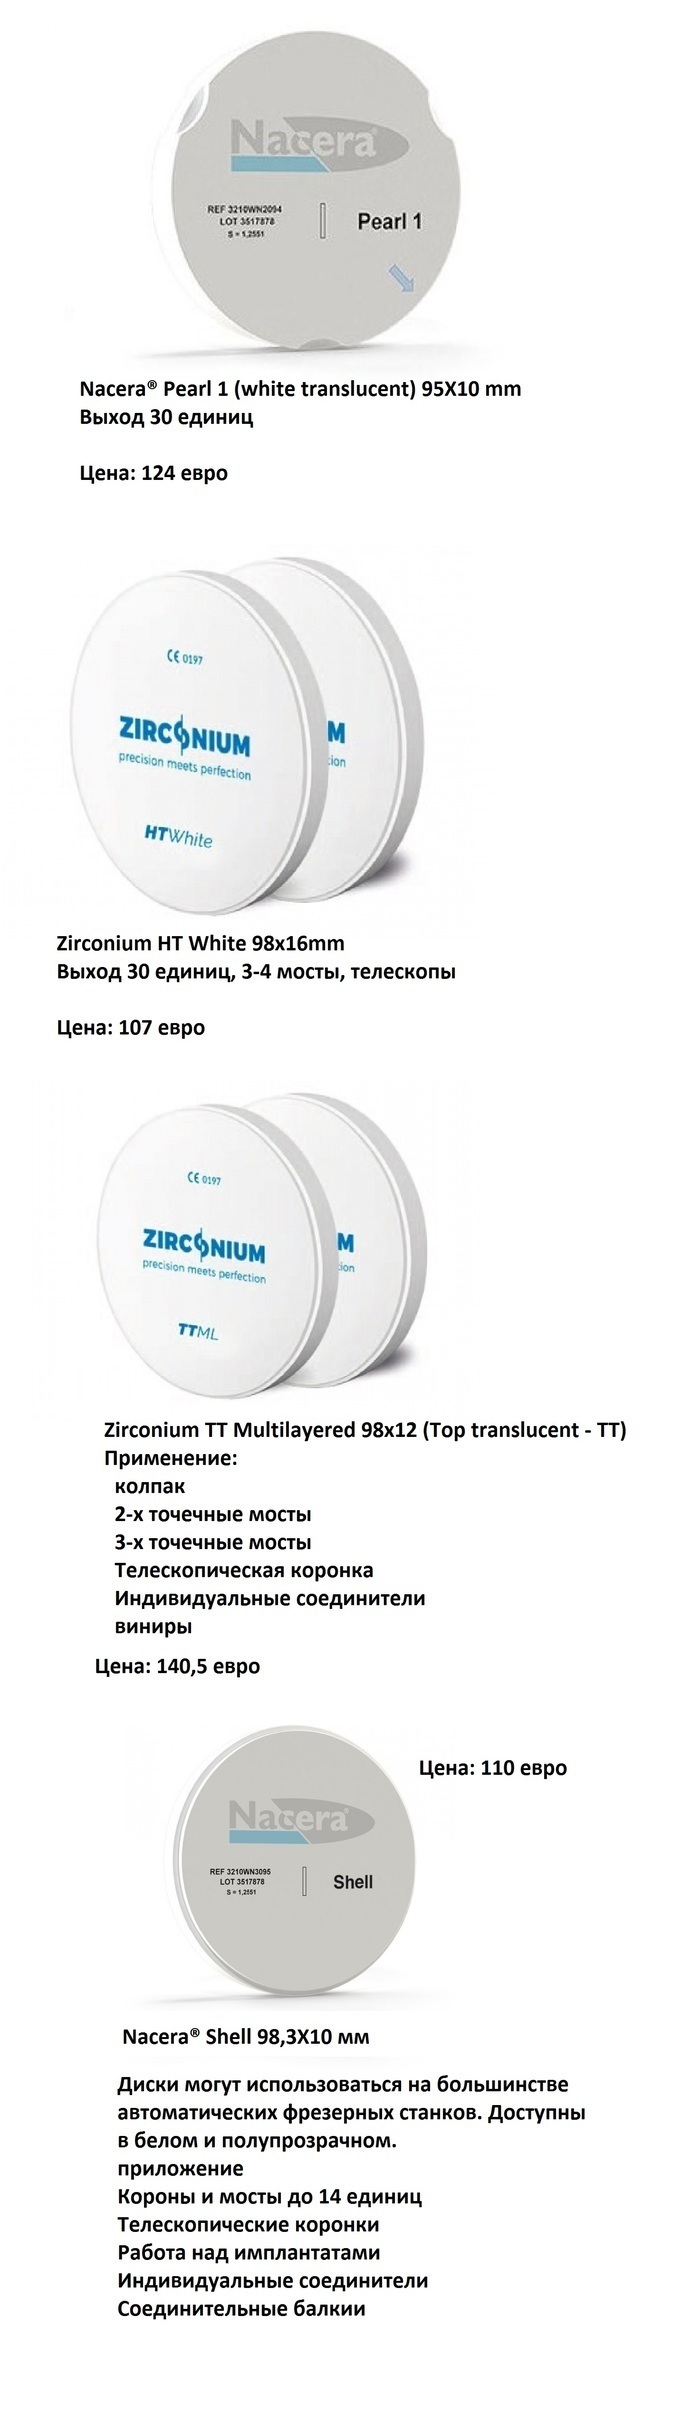 NovaDenta - Диски Zir + PMMA, Zircon CAD/CAM. A. Girrbach, Kerox, Nacera, Zirconium. Celtra, Shofu. Zooble.com.ua